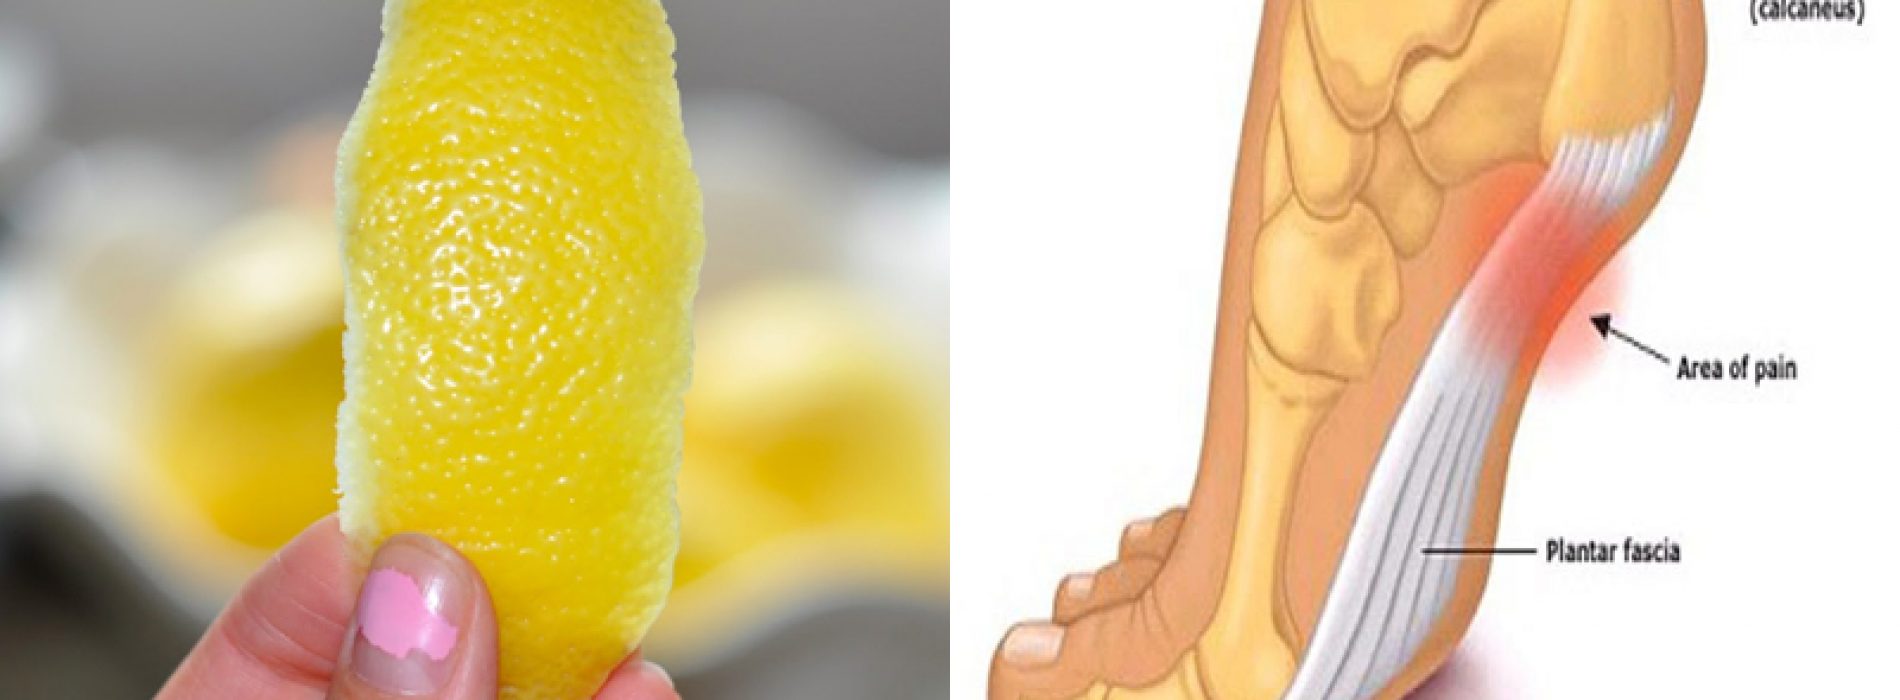 De 1 citroen truc om van ontstekingspijn en chronische pijn af te komen!